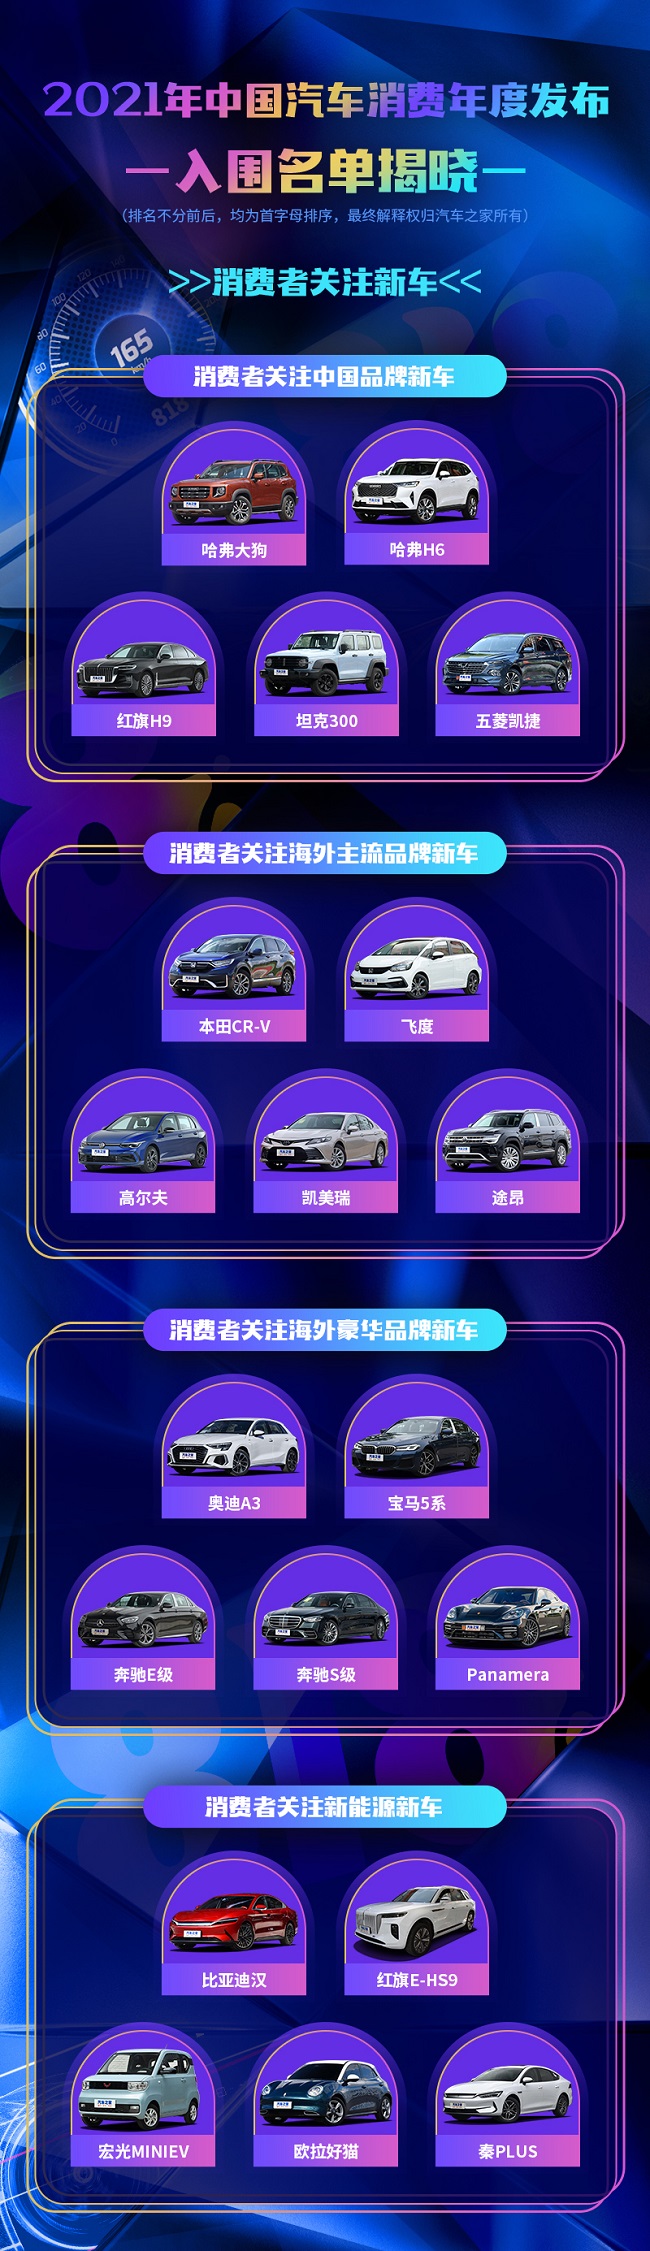 汽车之家倾力推出 “2021中国汽车消费年度发布” 入围名单正式揭晓